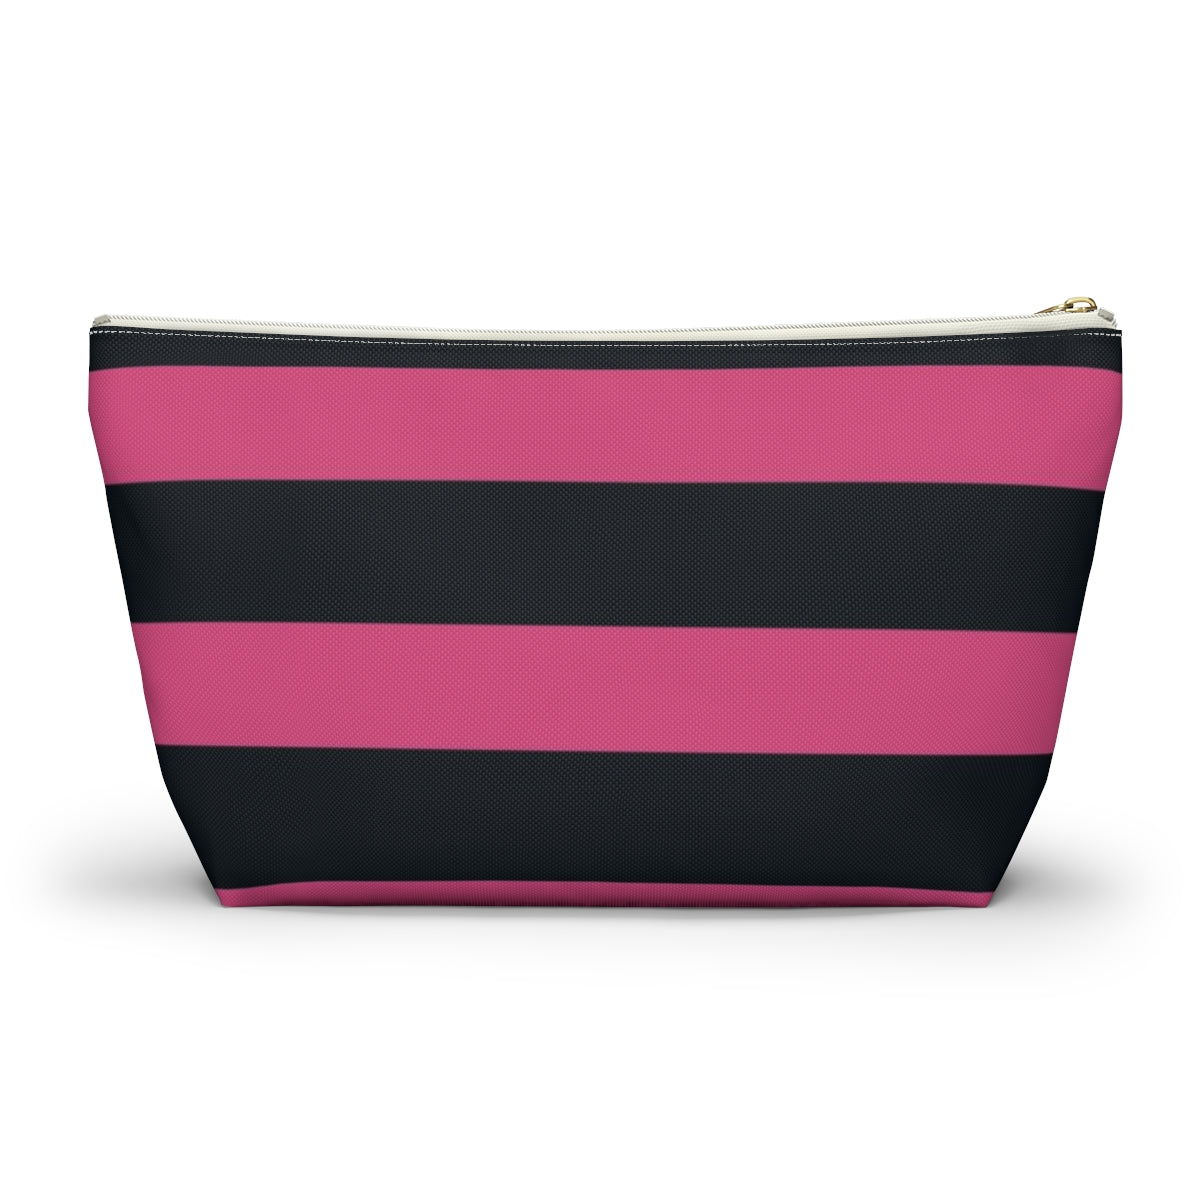 Big Bottom Zipper Pouch - Hot Pink/Navy Stripes